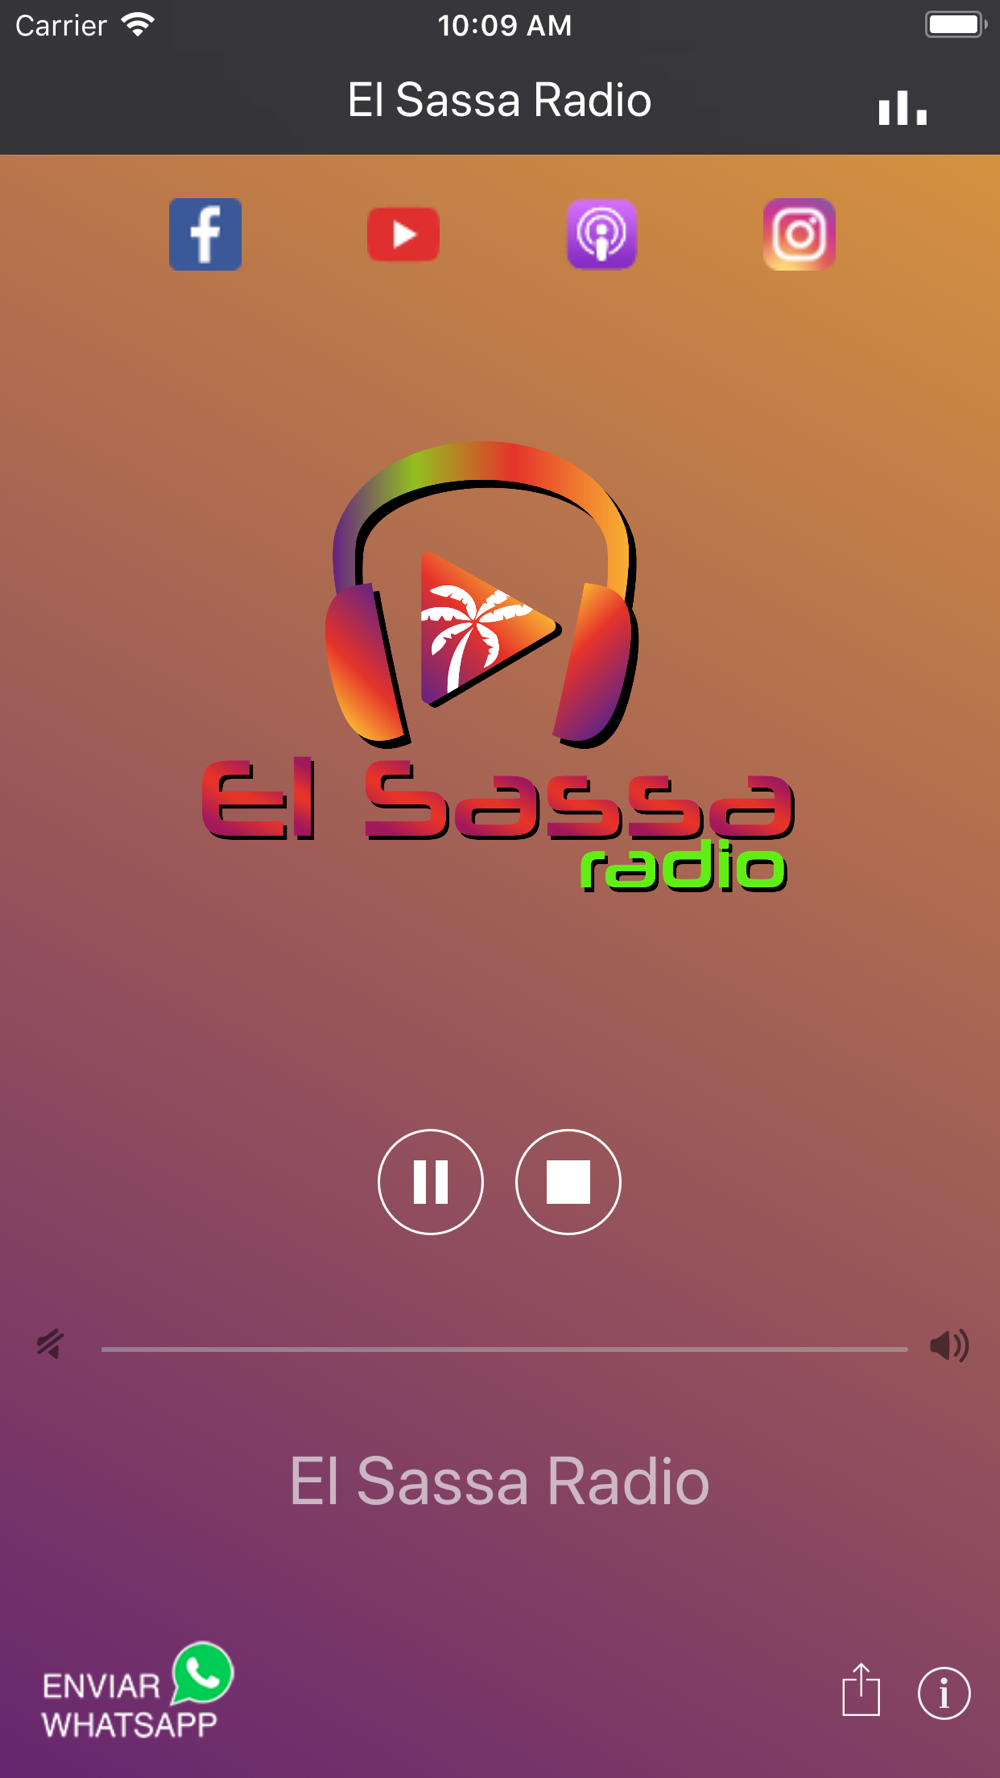 El Sassa Radio Free Download App for iPhone - STEPrimo.com